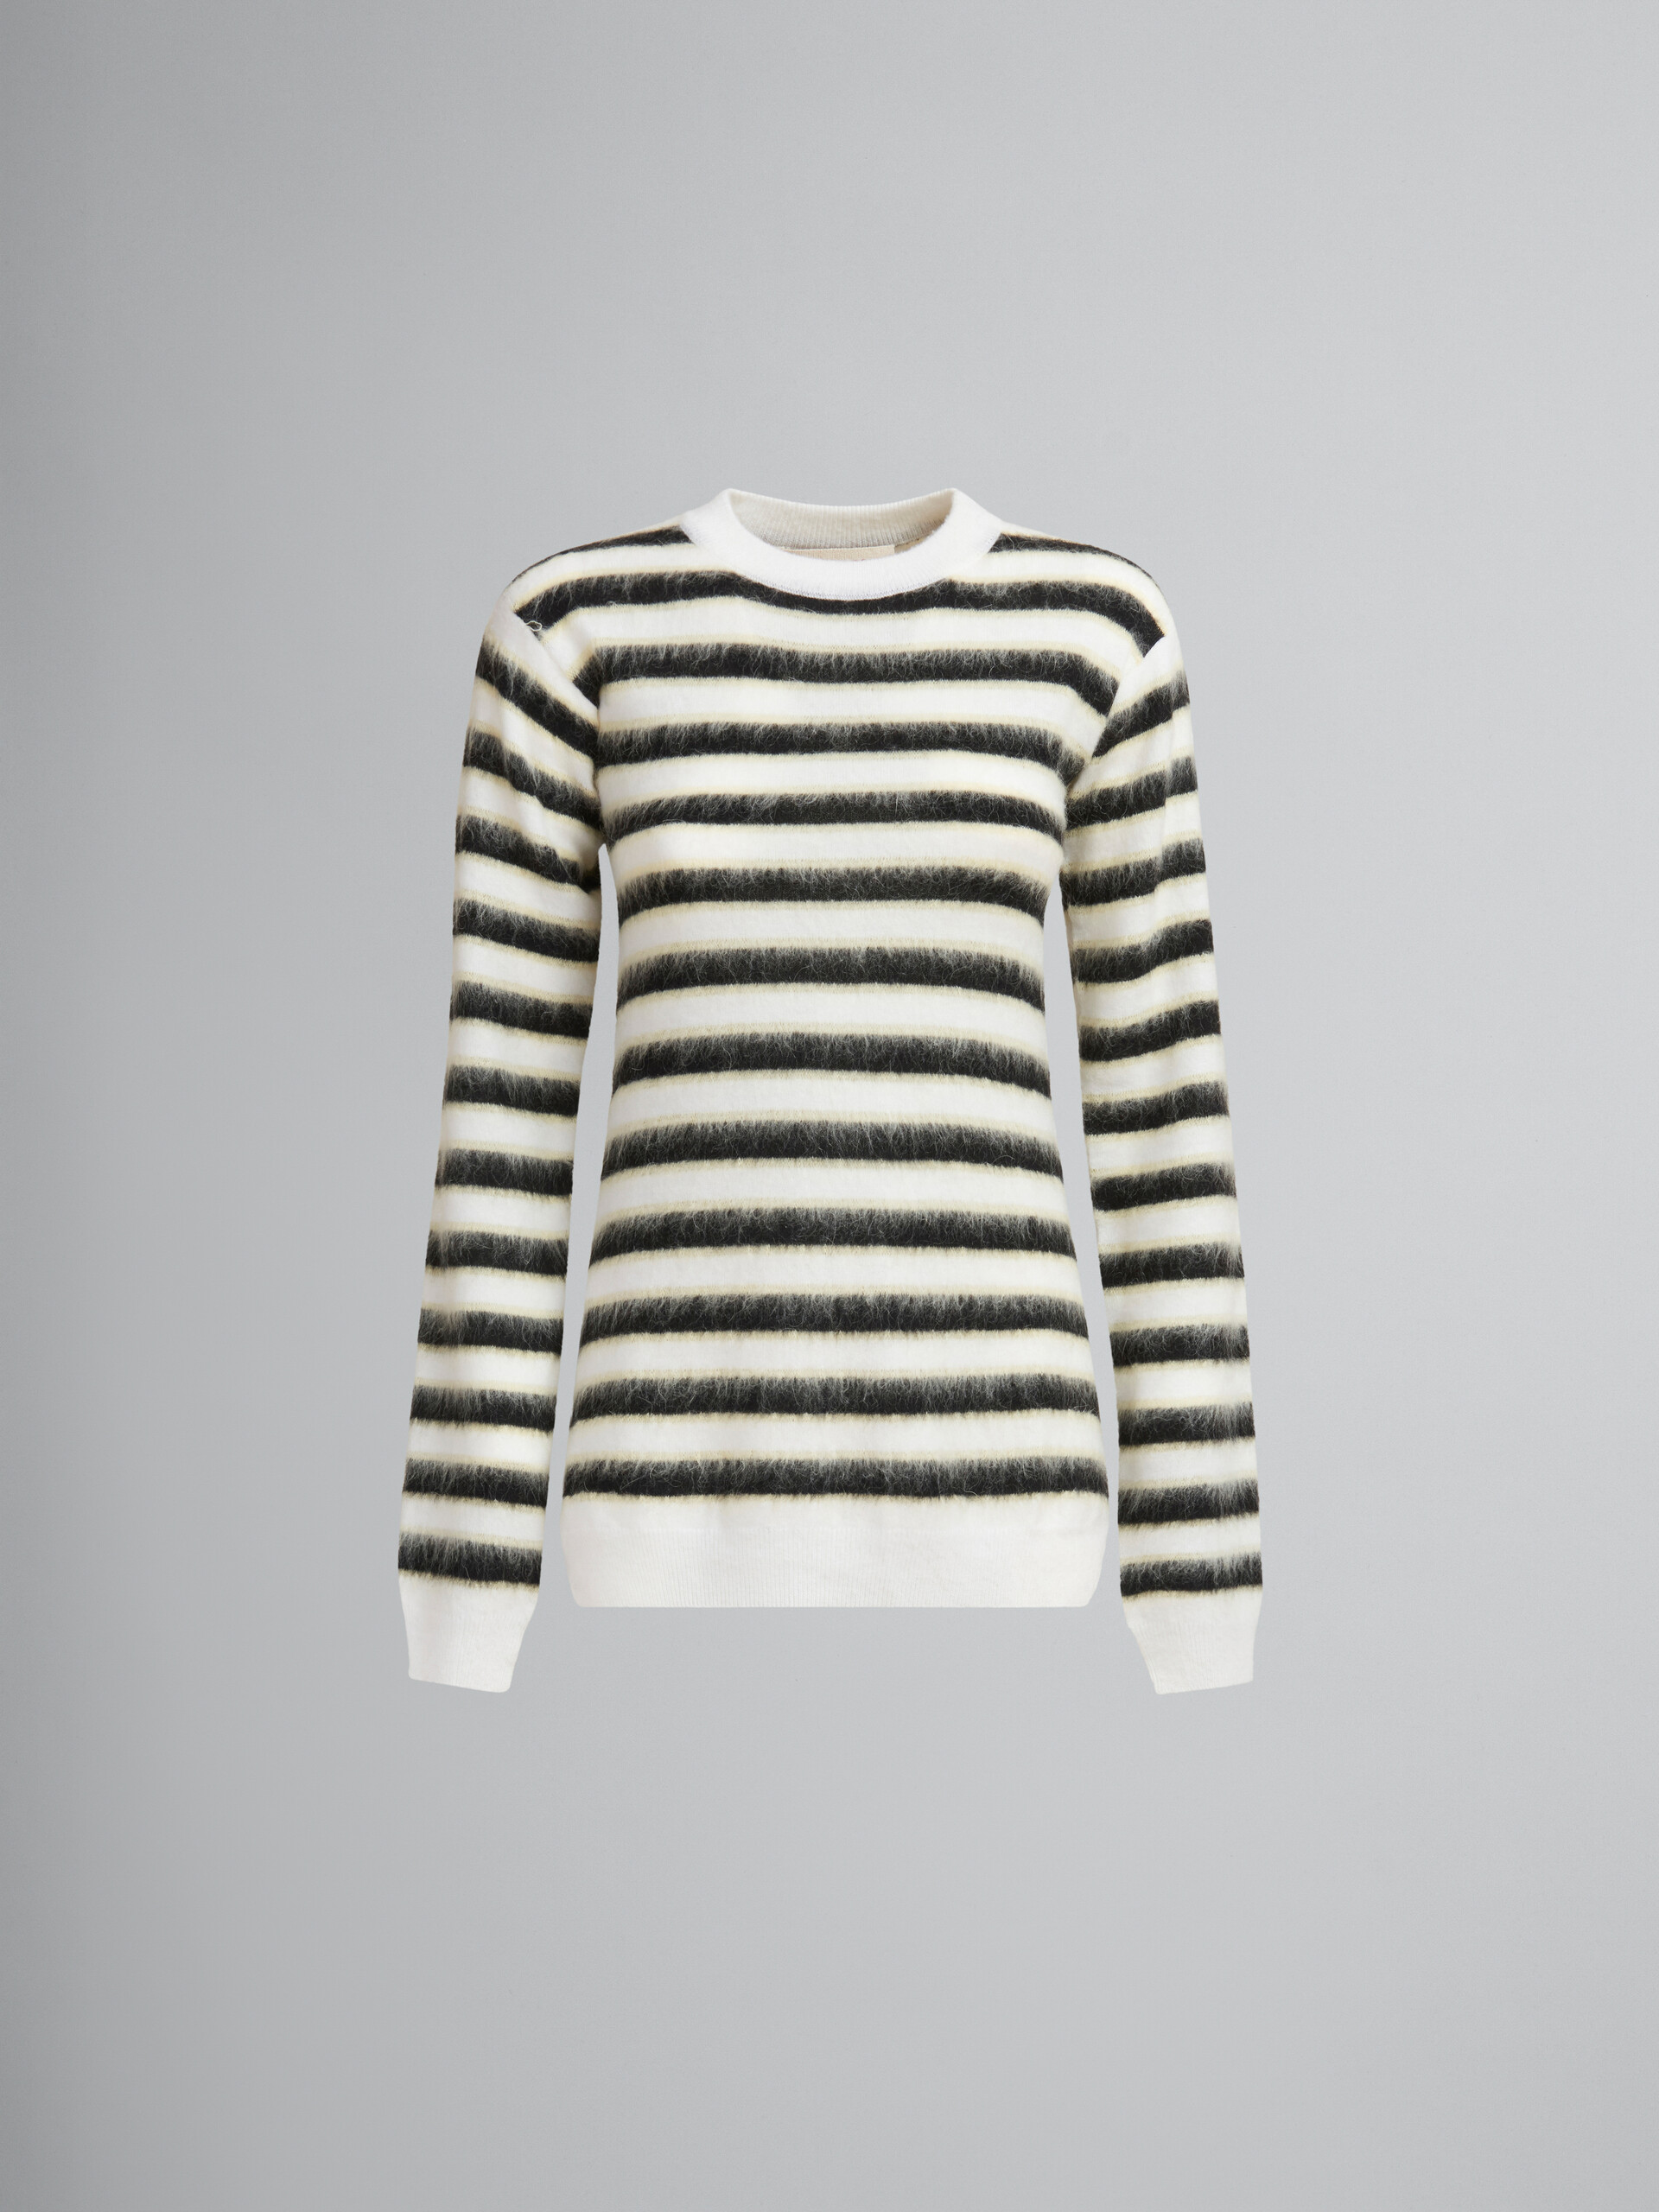 Schwarz-weiß gestreifter Pullover aus Wolle und Mohair - Pullover - Image 1